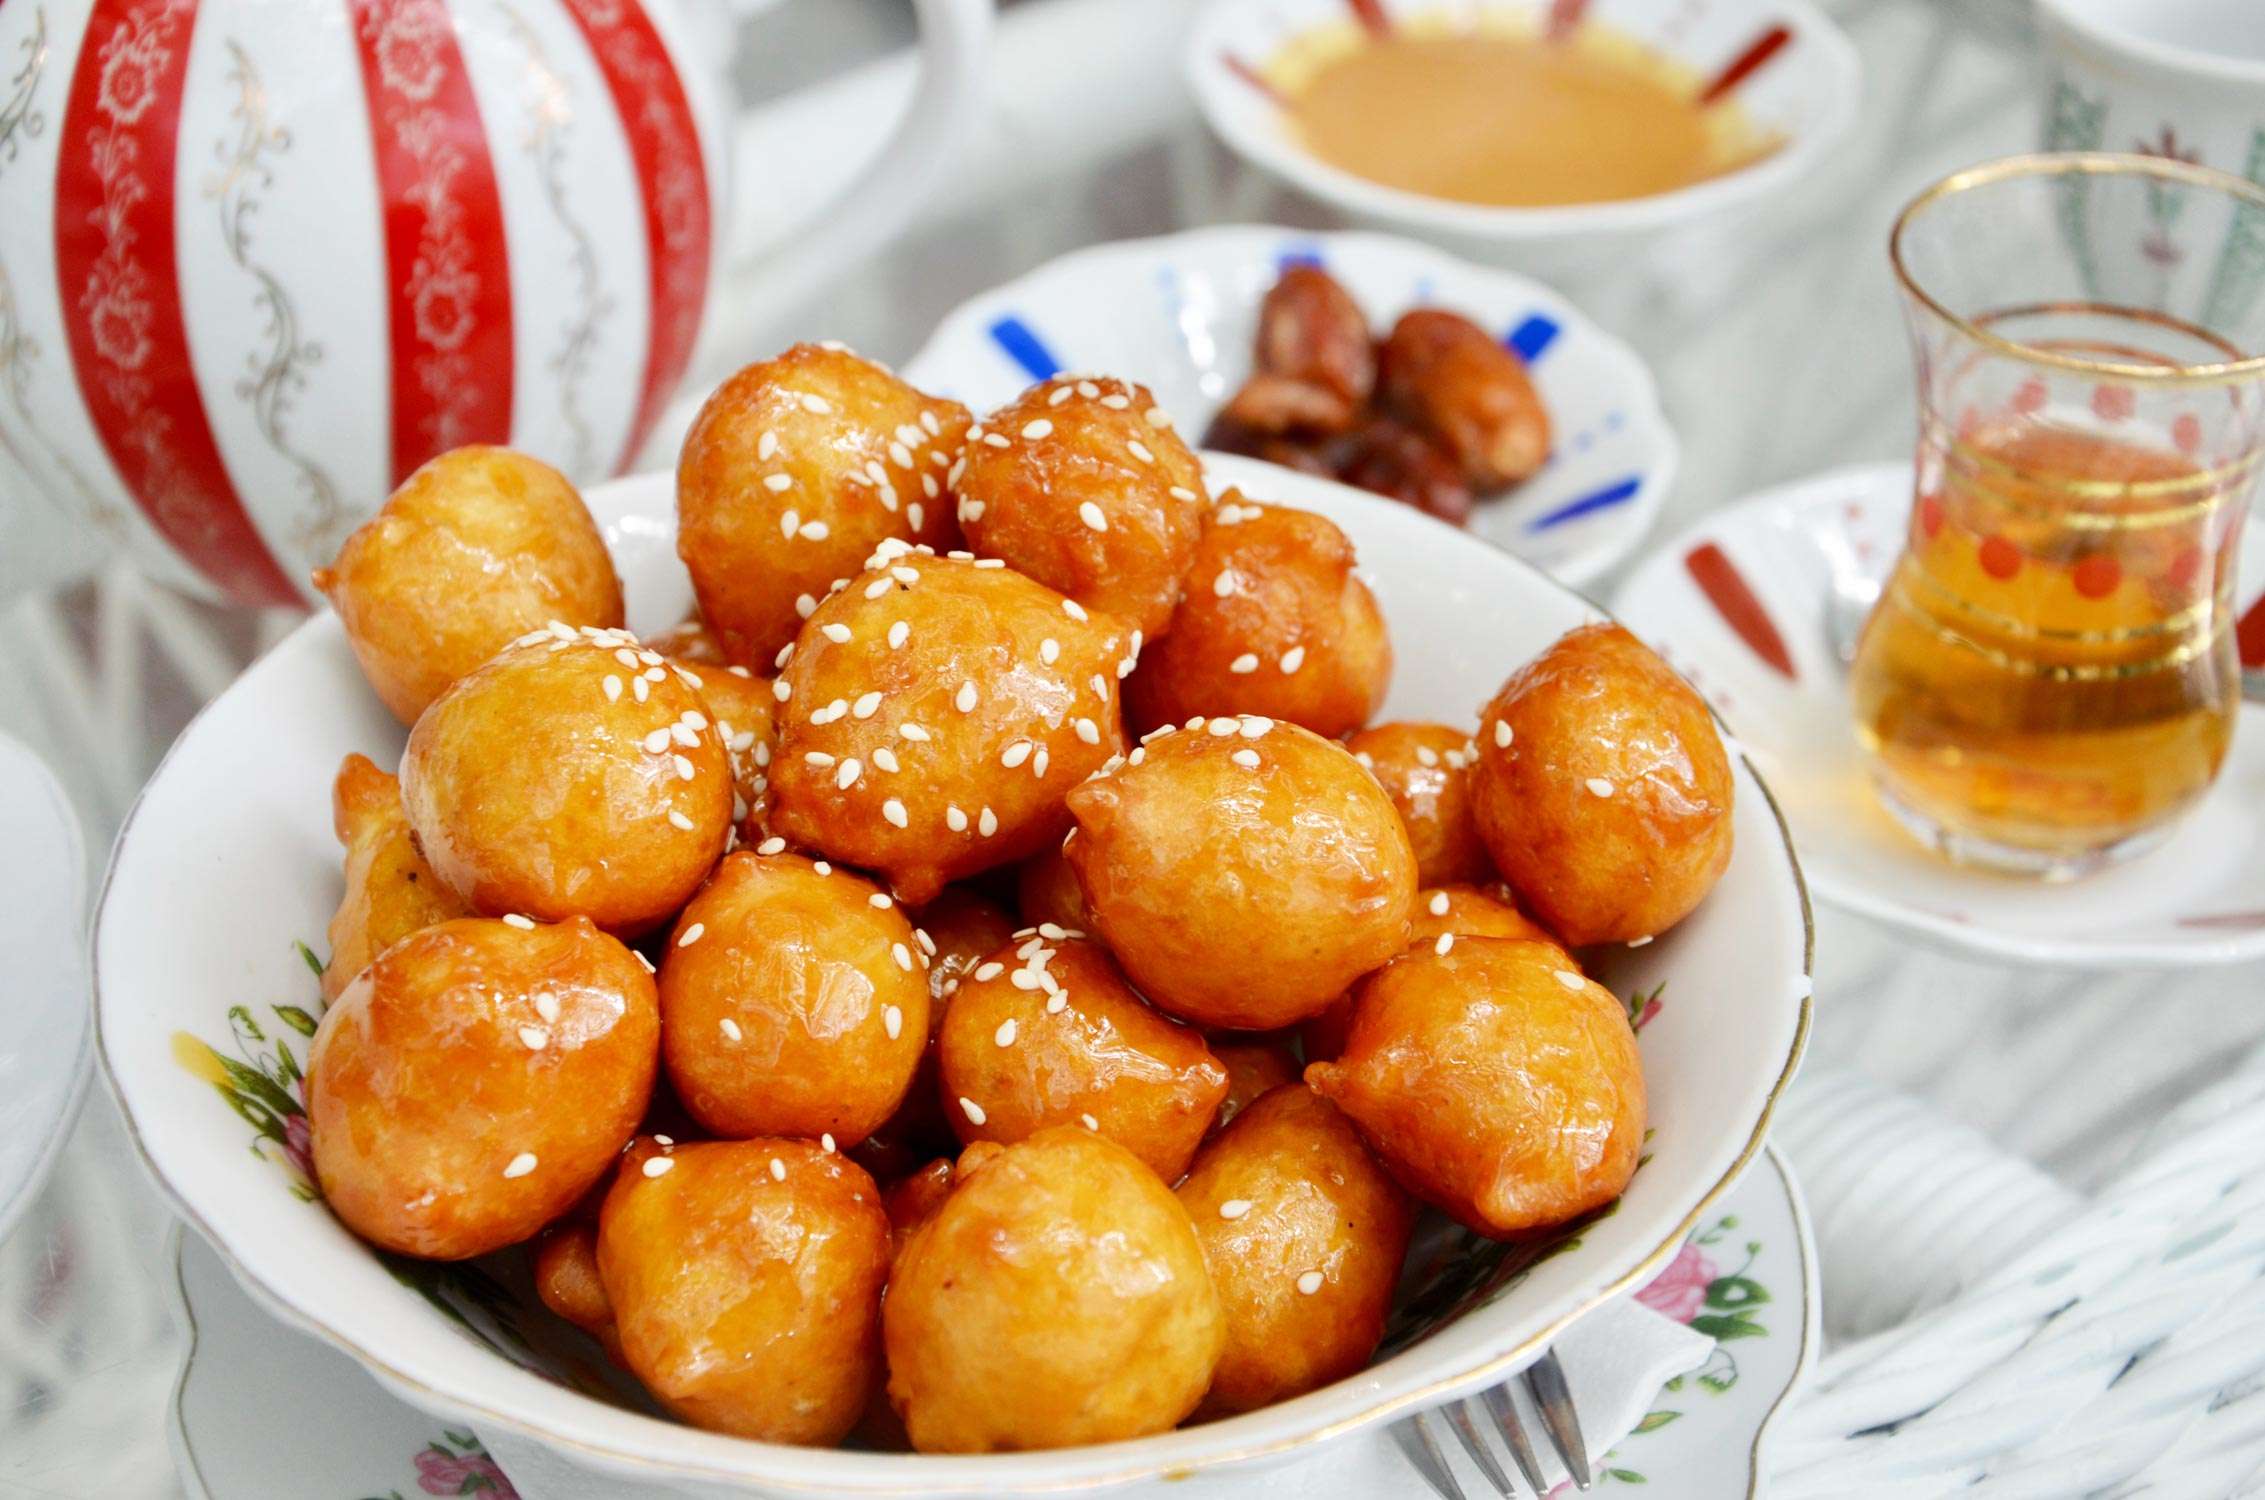 Traditional oriental dessert speciality Legematt, fried dough balls in a porcelain bowl